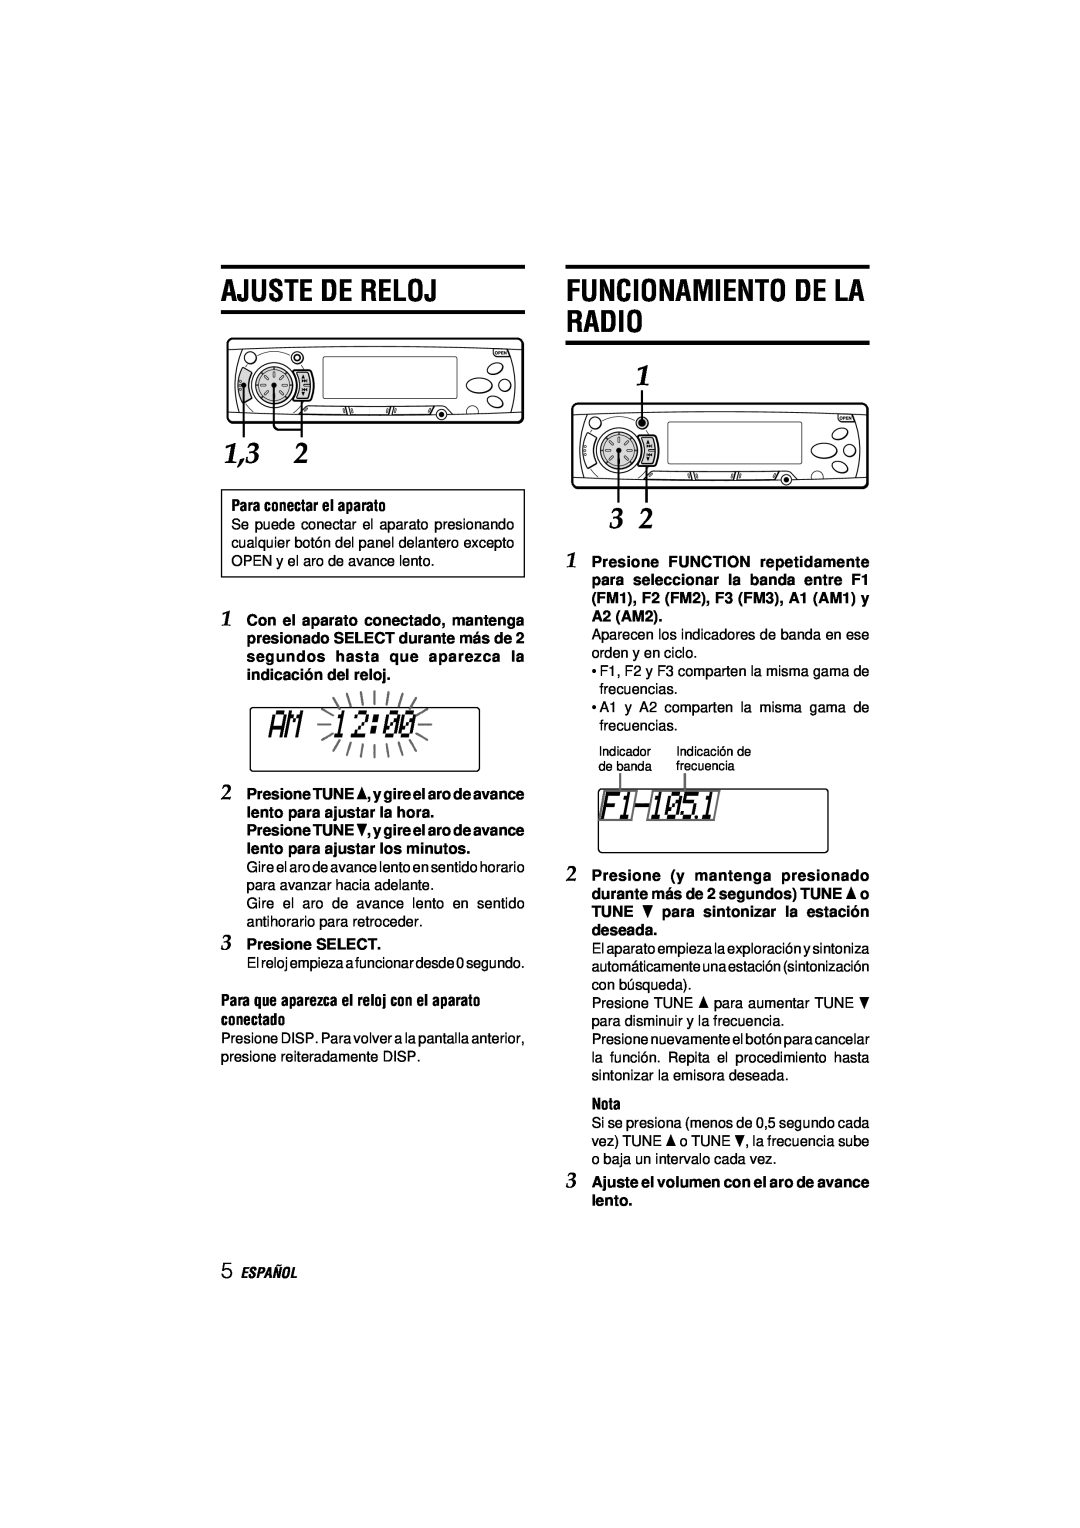 Aiwa CDC-MP3 manual Ajuste De Reloj, Radio, Funcionamiento De La, Español 